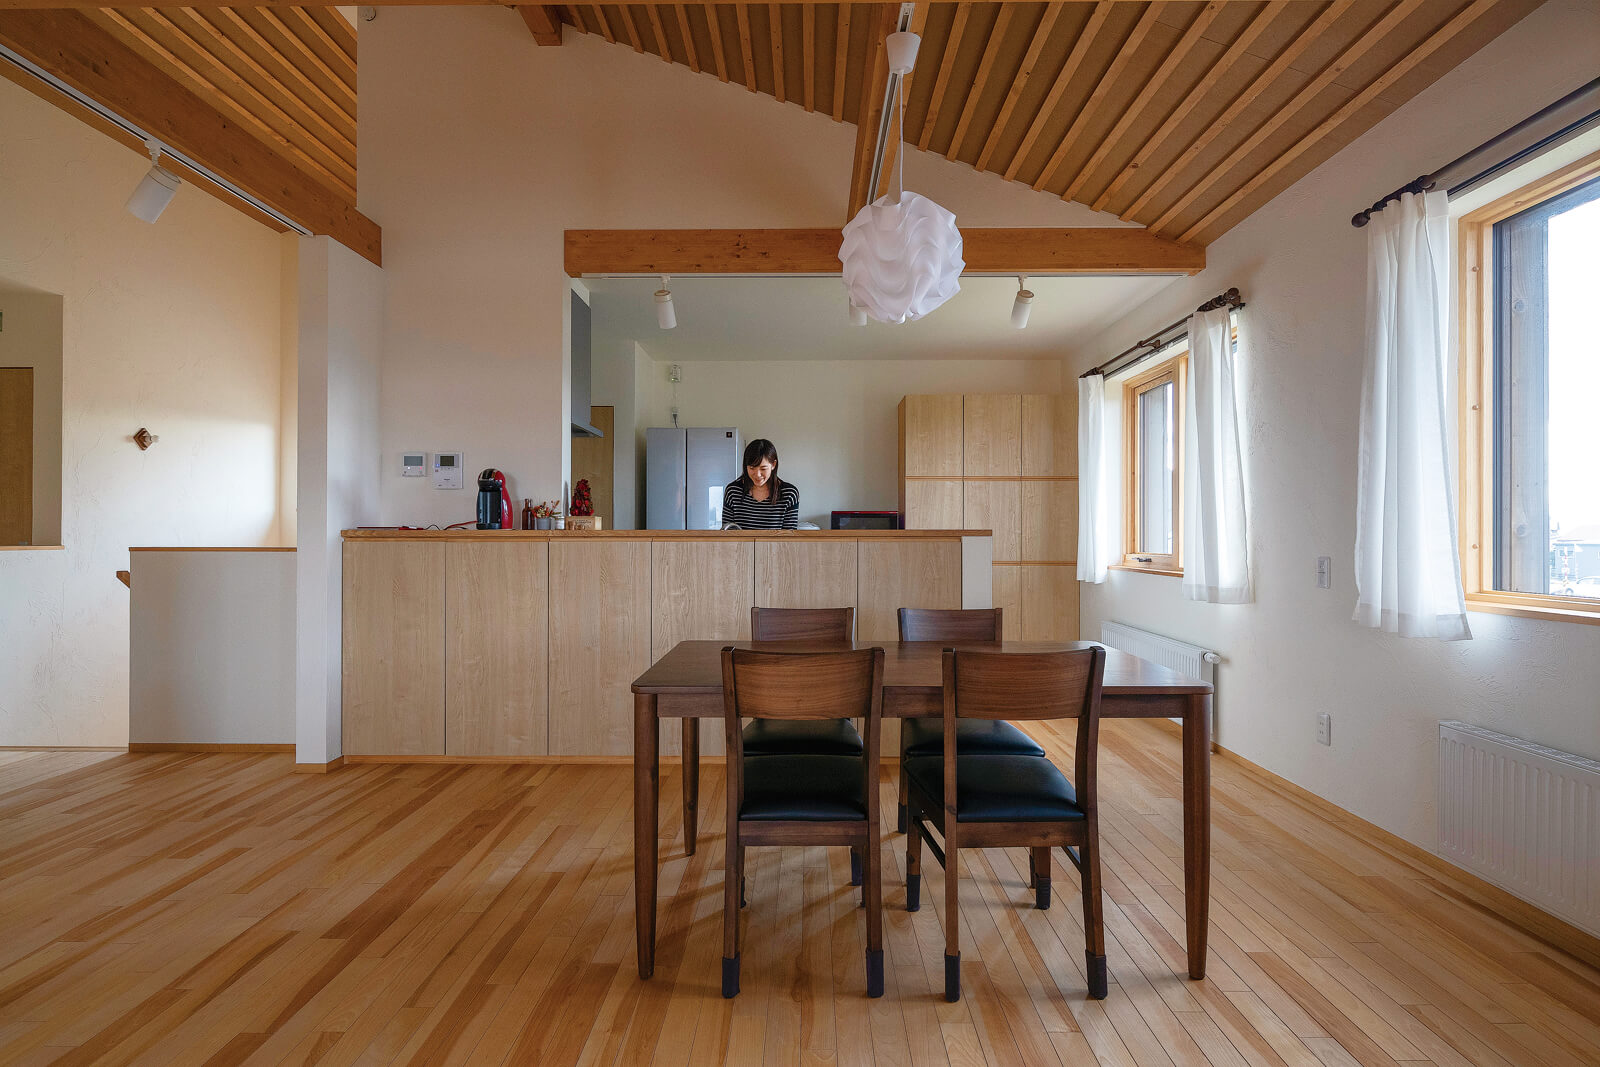 キッチンもカウンターや壁の収納などを造作し、床とのつながりや木の統一感を出している